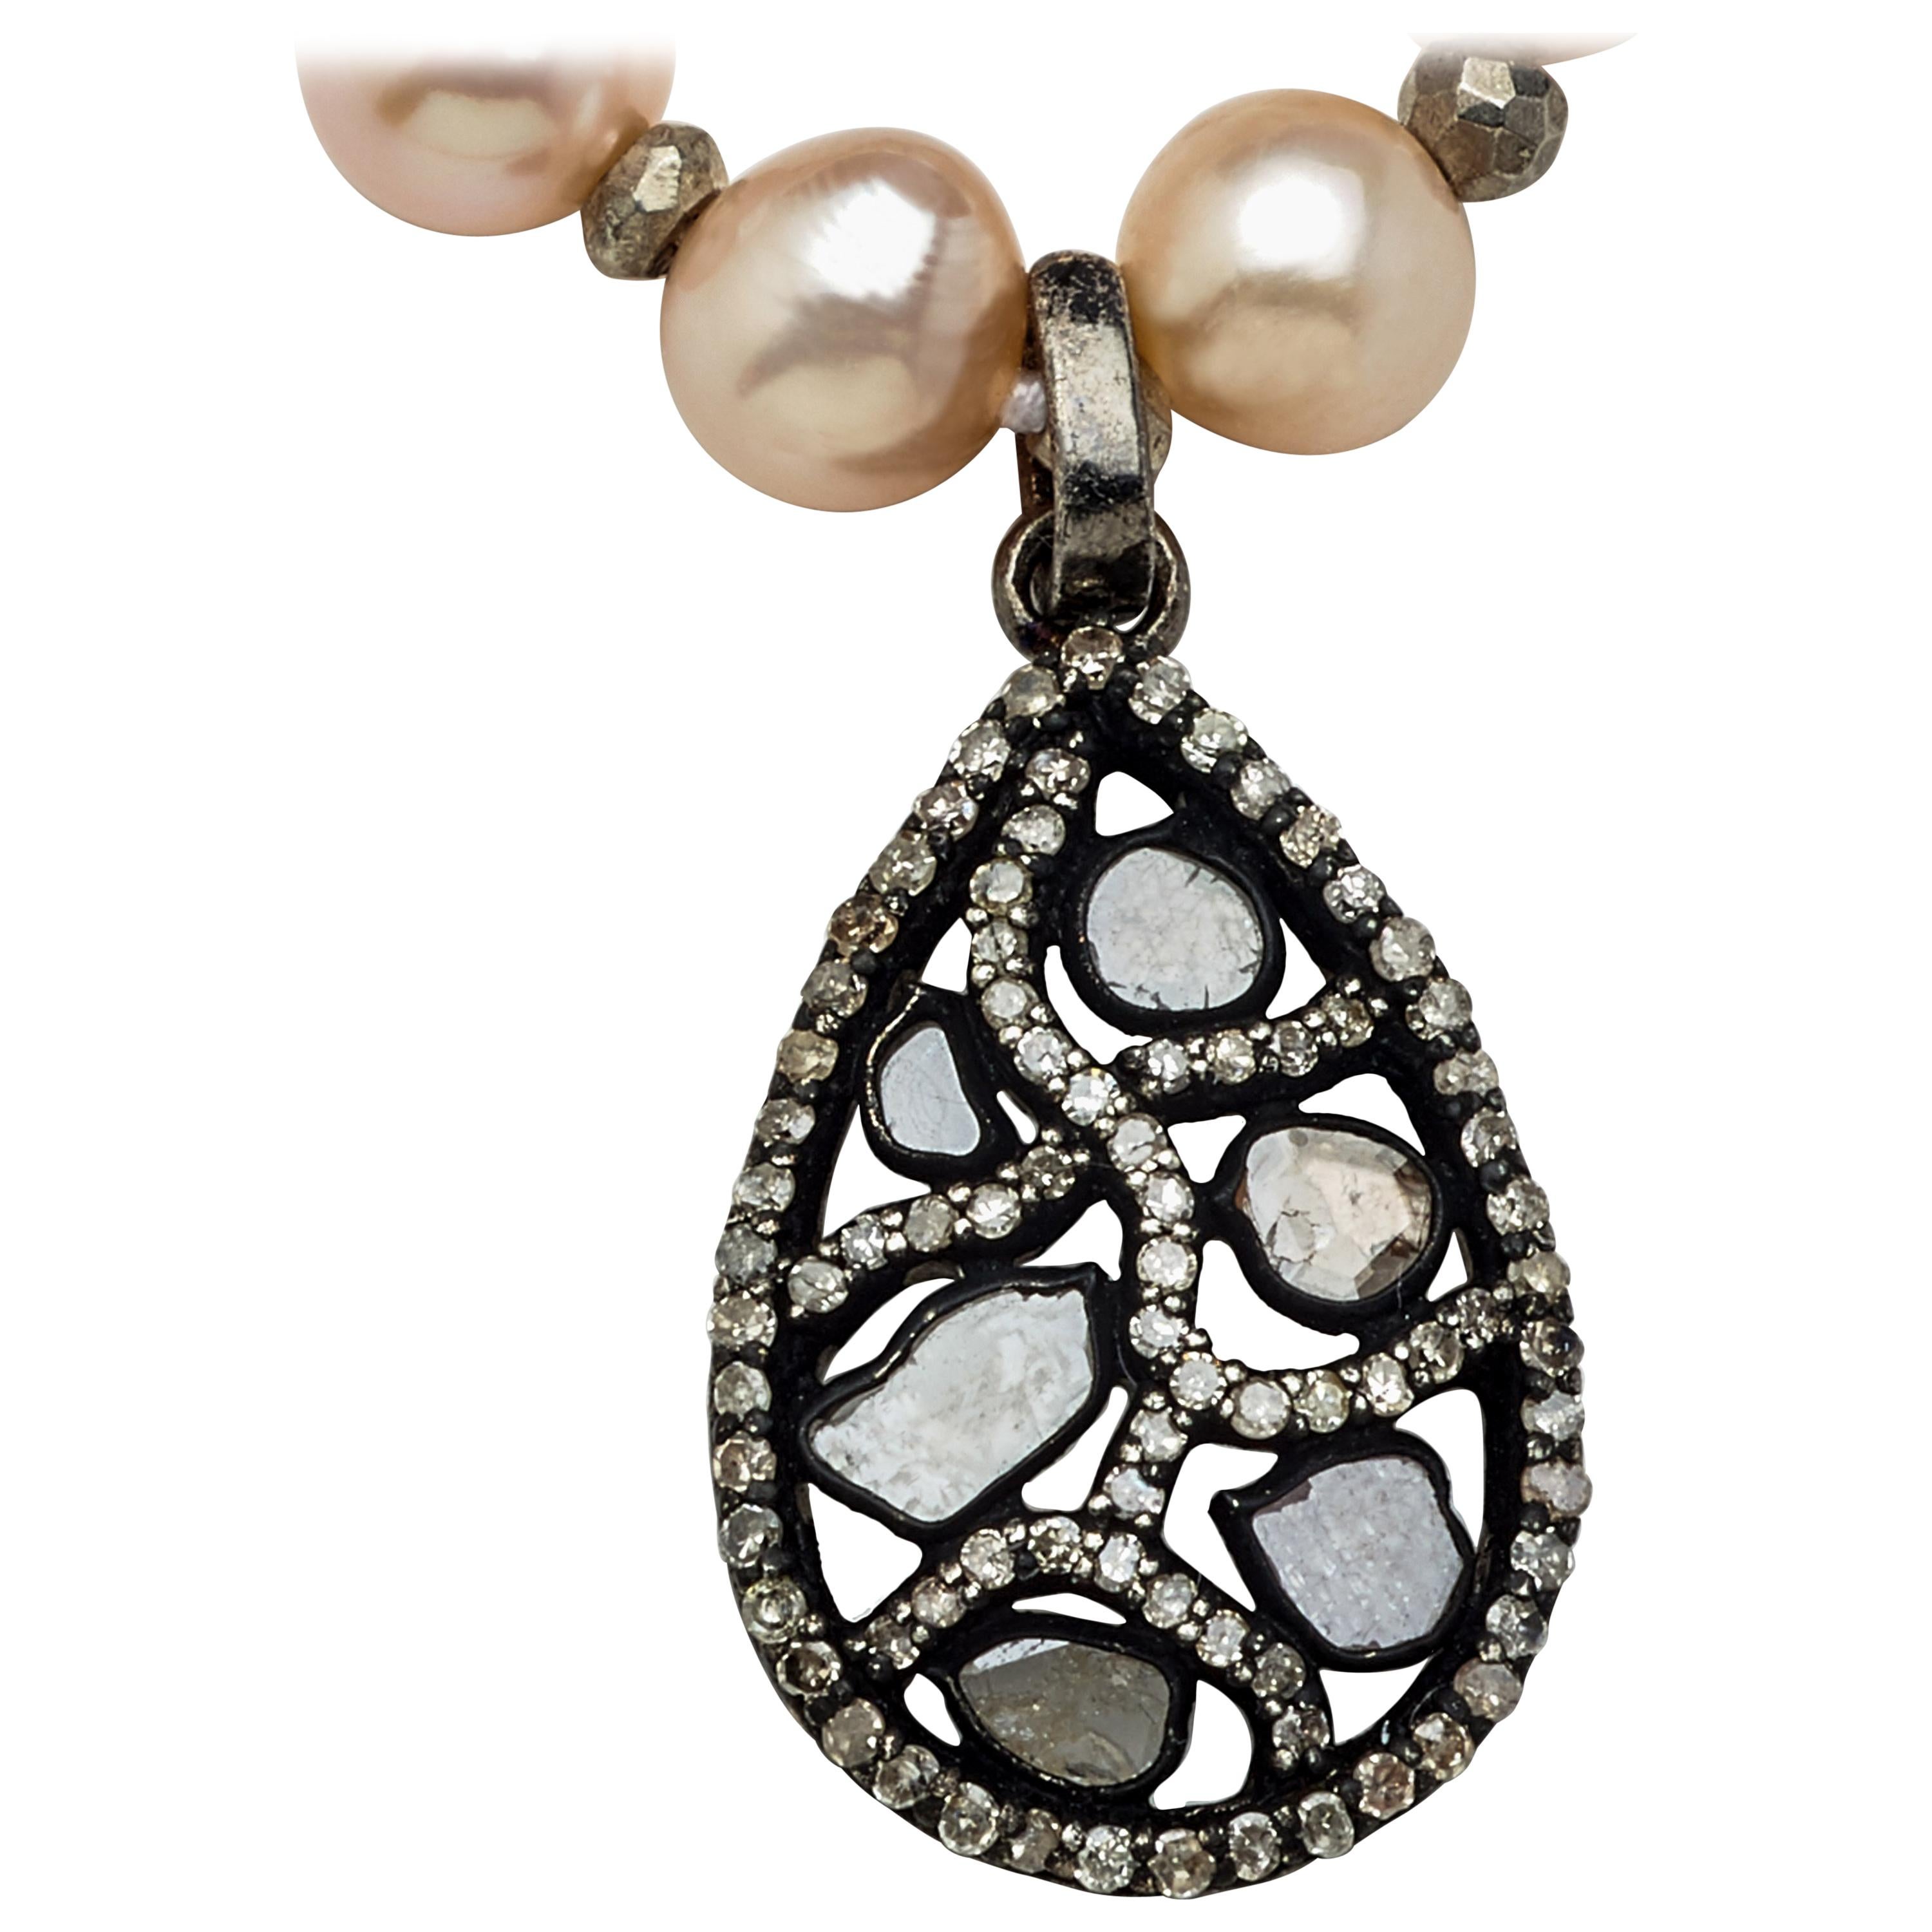 Joli en rose, ce collier de 28 pouces de quatre-vingt-huit perles Akoya fines et authentiques de 6-1/4 mm est enfilé à la main avec une mise en valeur de la qualité des perles 
De véritables perles de pyrite d'argent conduisant à un pendentif en